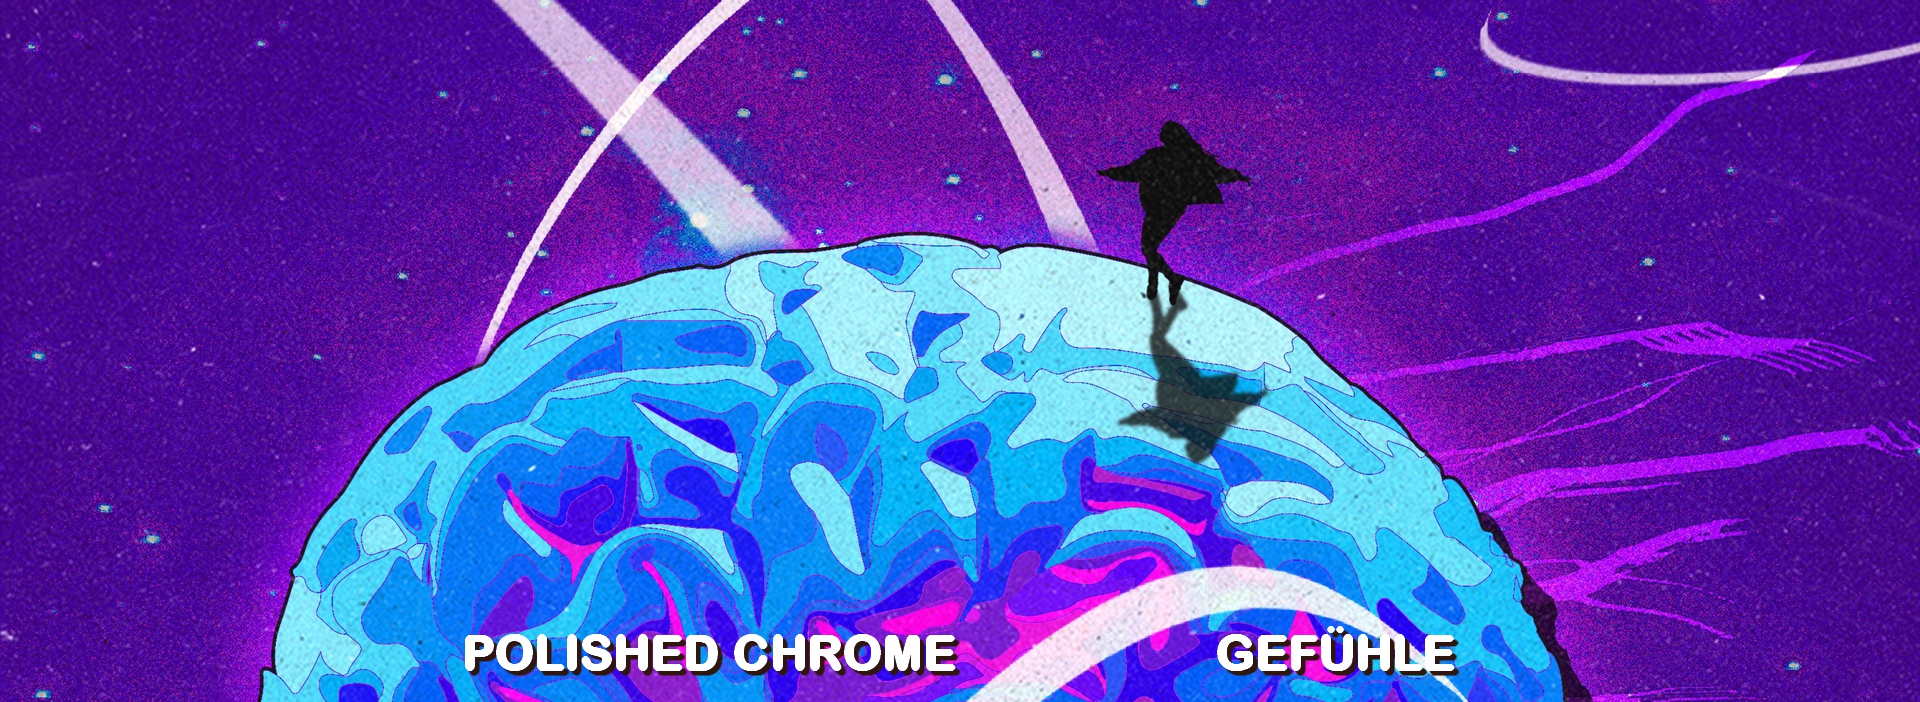 Polished Chrome - Gefühle